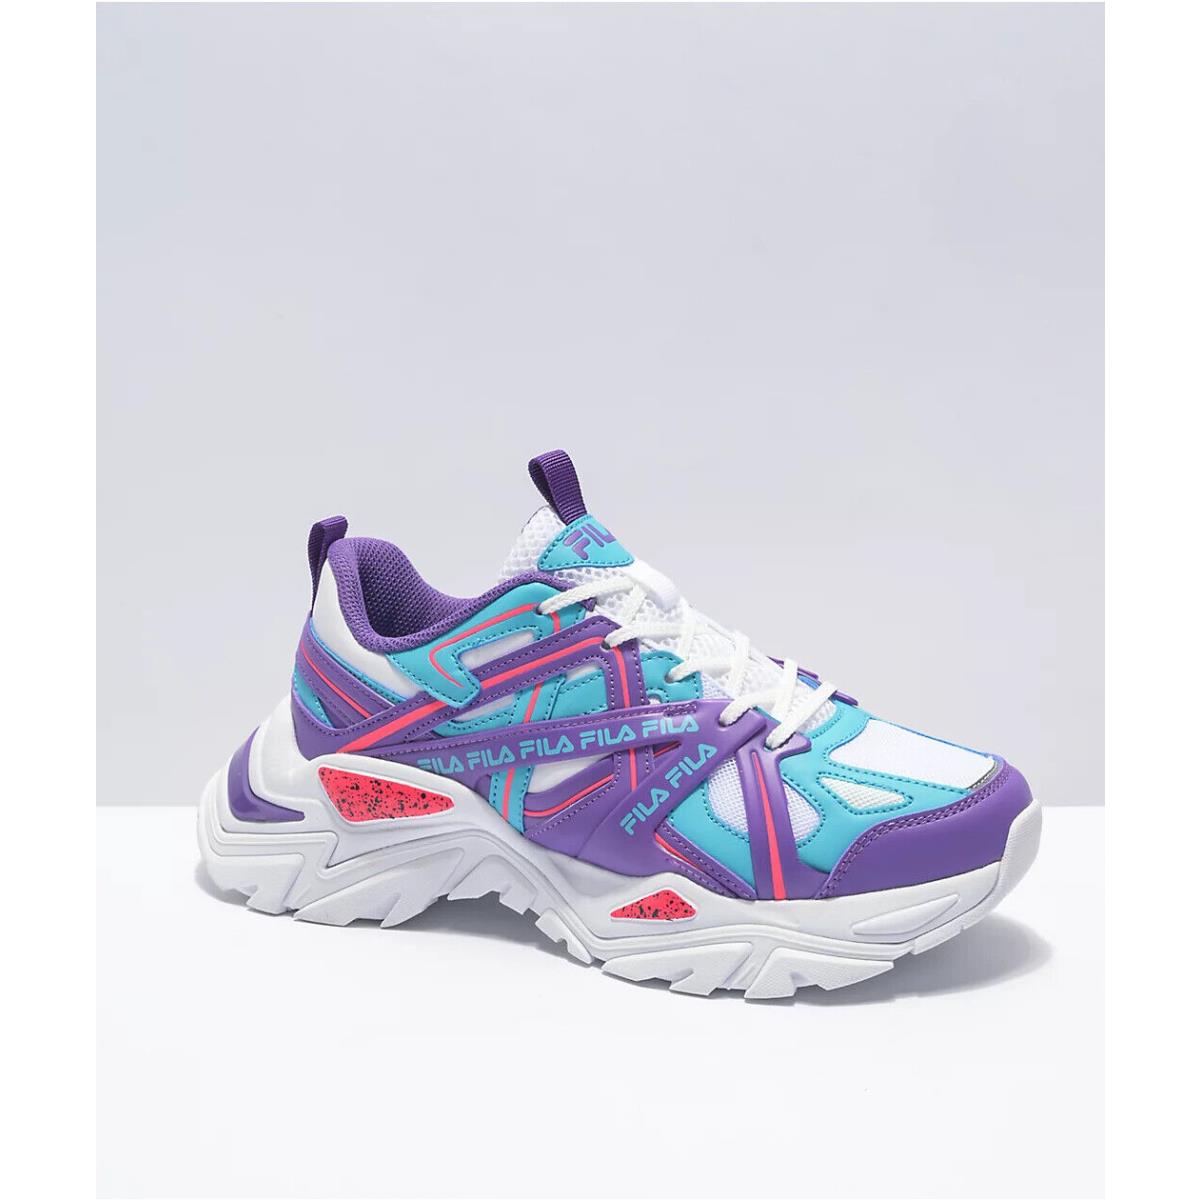 Fila Electrove 2 Youth / Kids - White/purple/scuba - Shoe Sneaker - Size 5 / 5Y